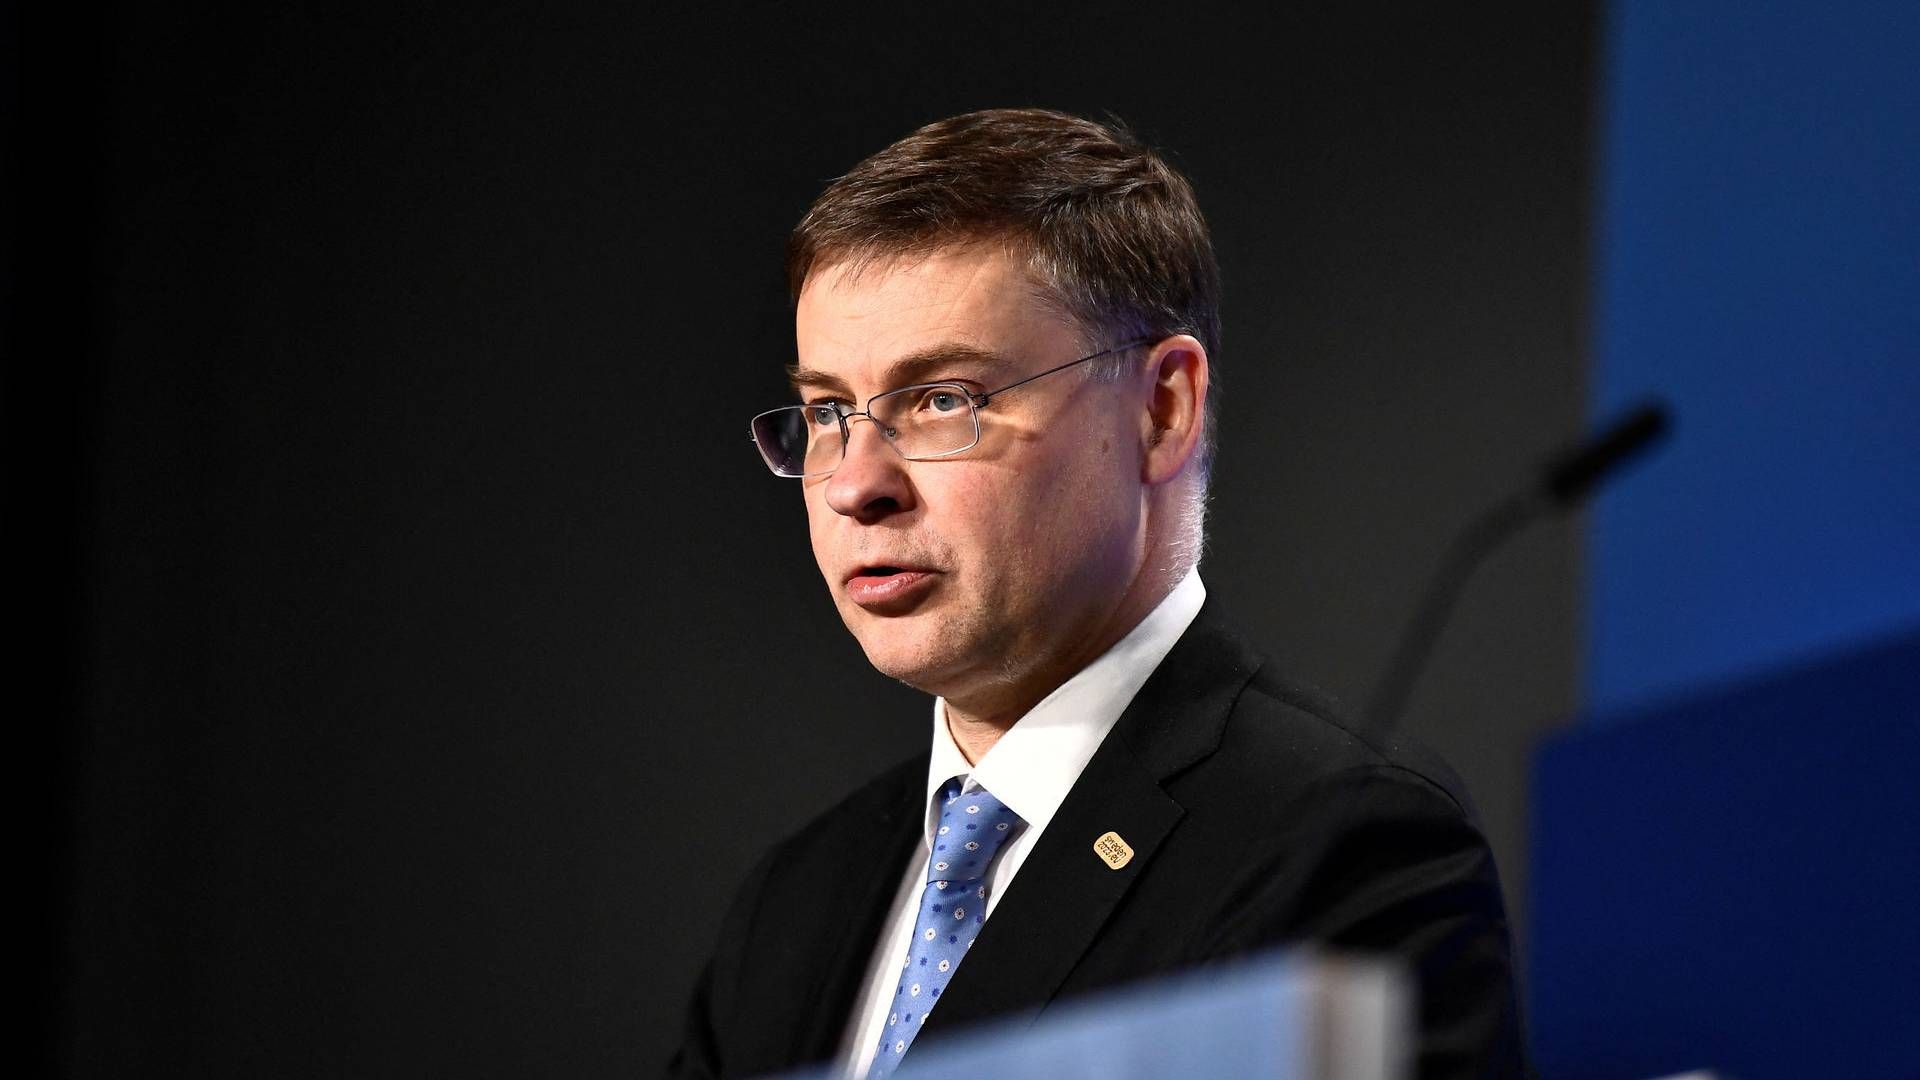 Formålet med lovpakken er at forbedre retail-investering, siger Europa-kommissær Valdis Dombrovskis til FinansWatch. | Foto: Tt News Agency/Reuters/Ritzau Scanpix